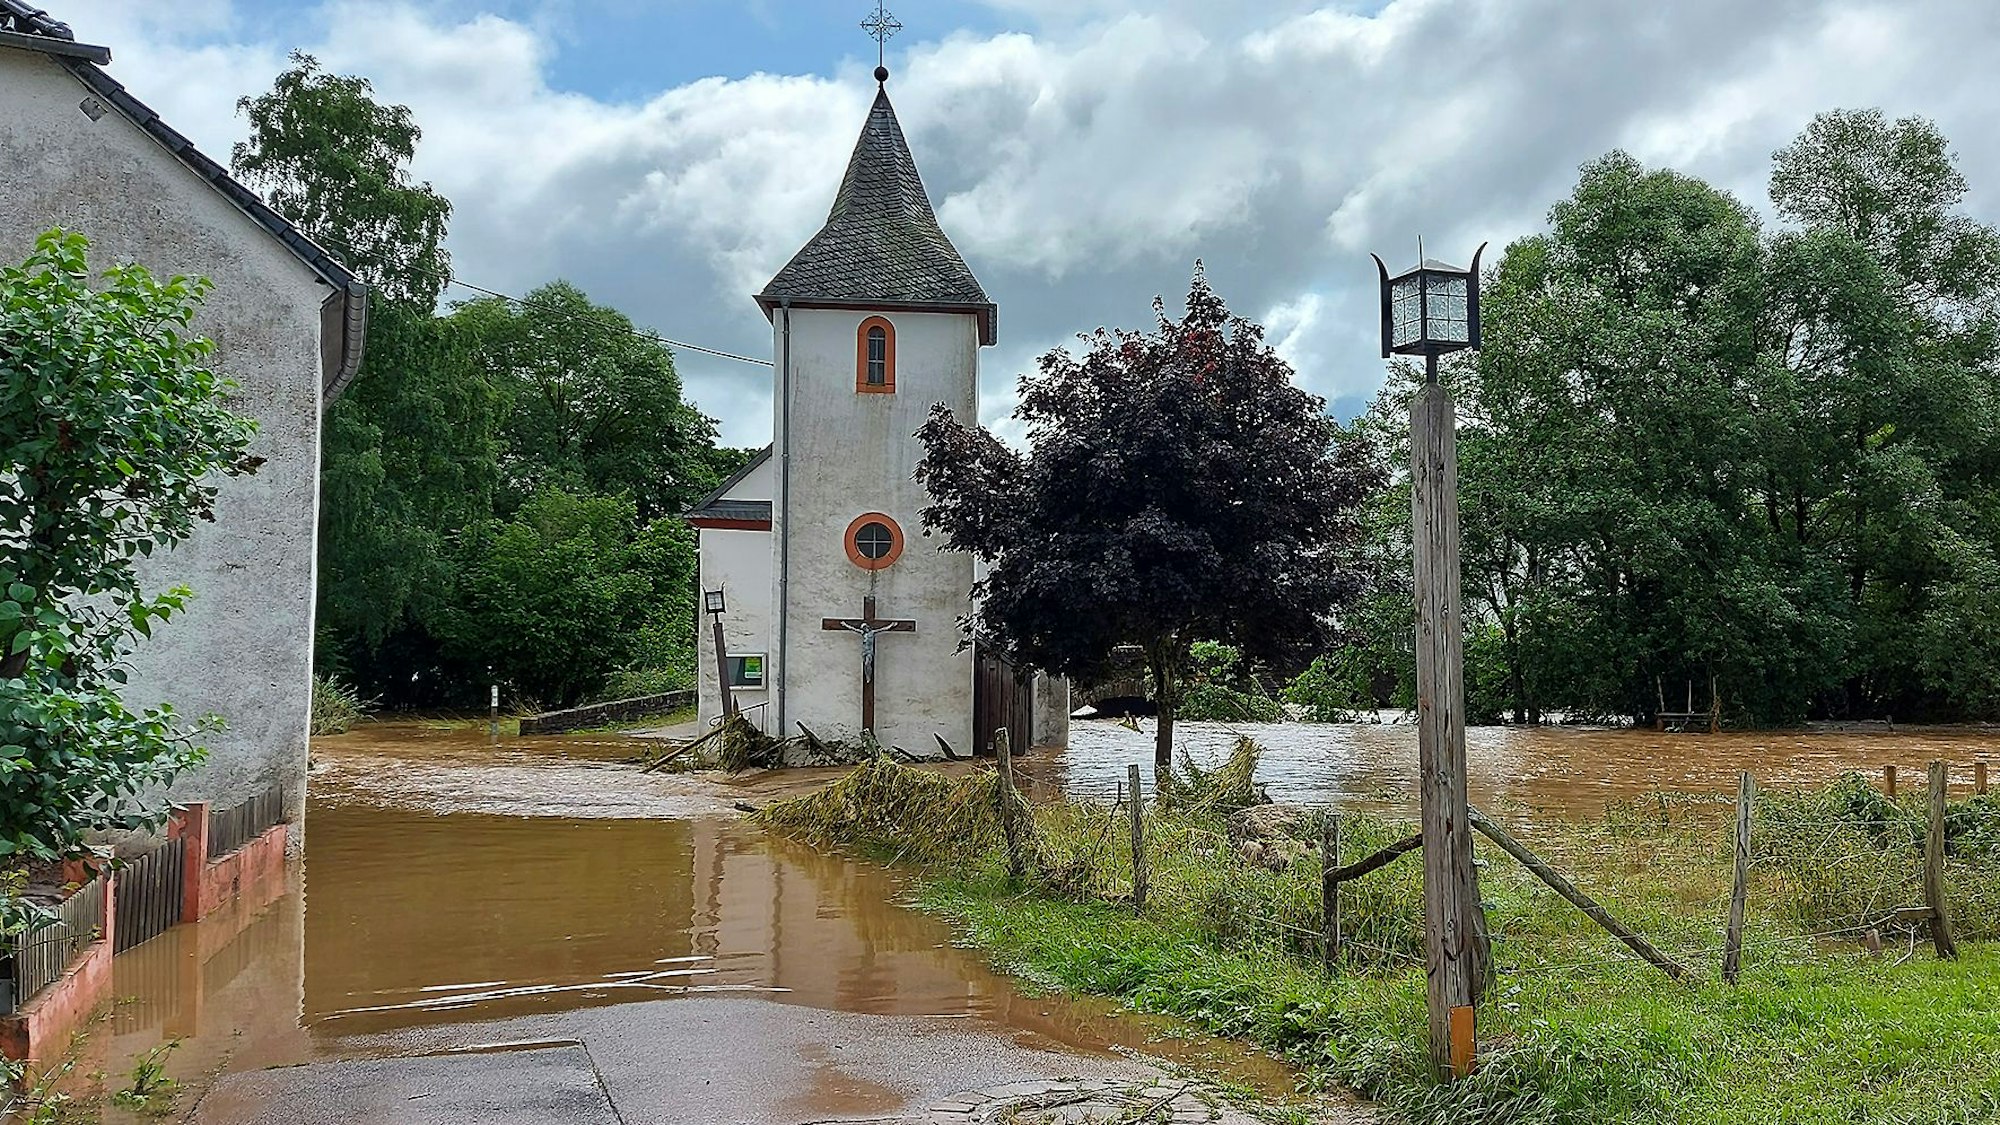 Hochwasser bedeckt eine Straße. Ein Haus und eine Kirche stehen im Wasser. Nur ein wenig Wiese kommt an der Seite des Bildes noch aus dem Wasser.